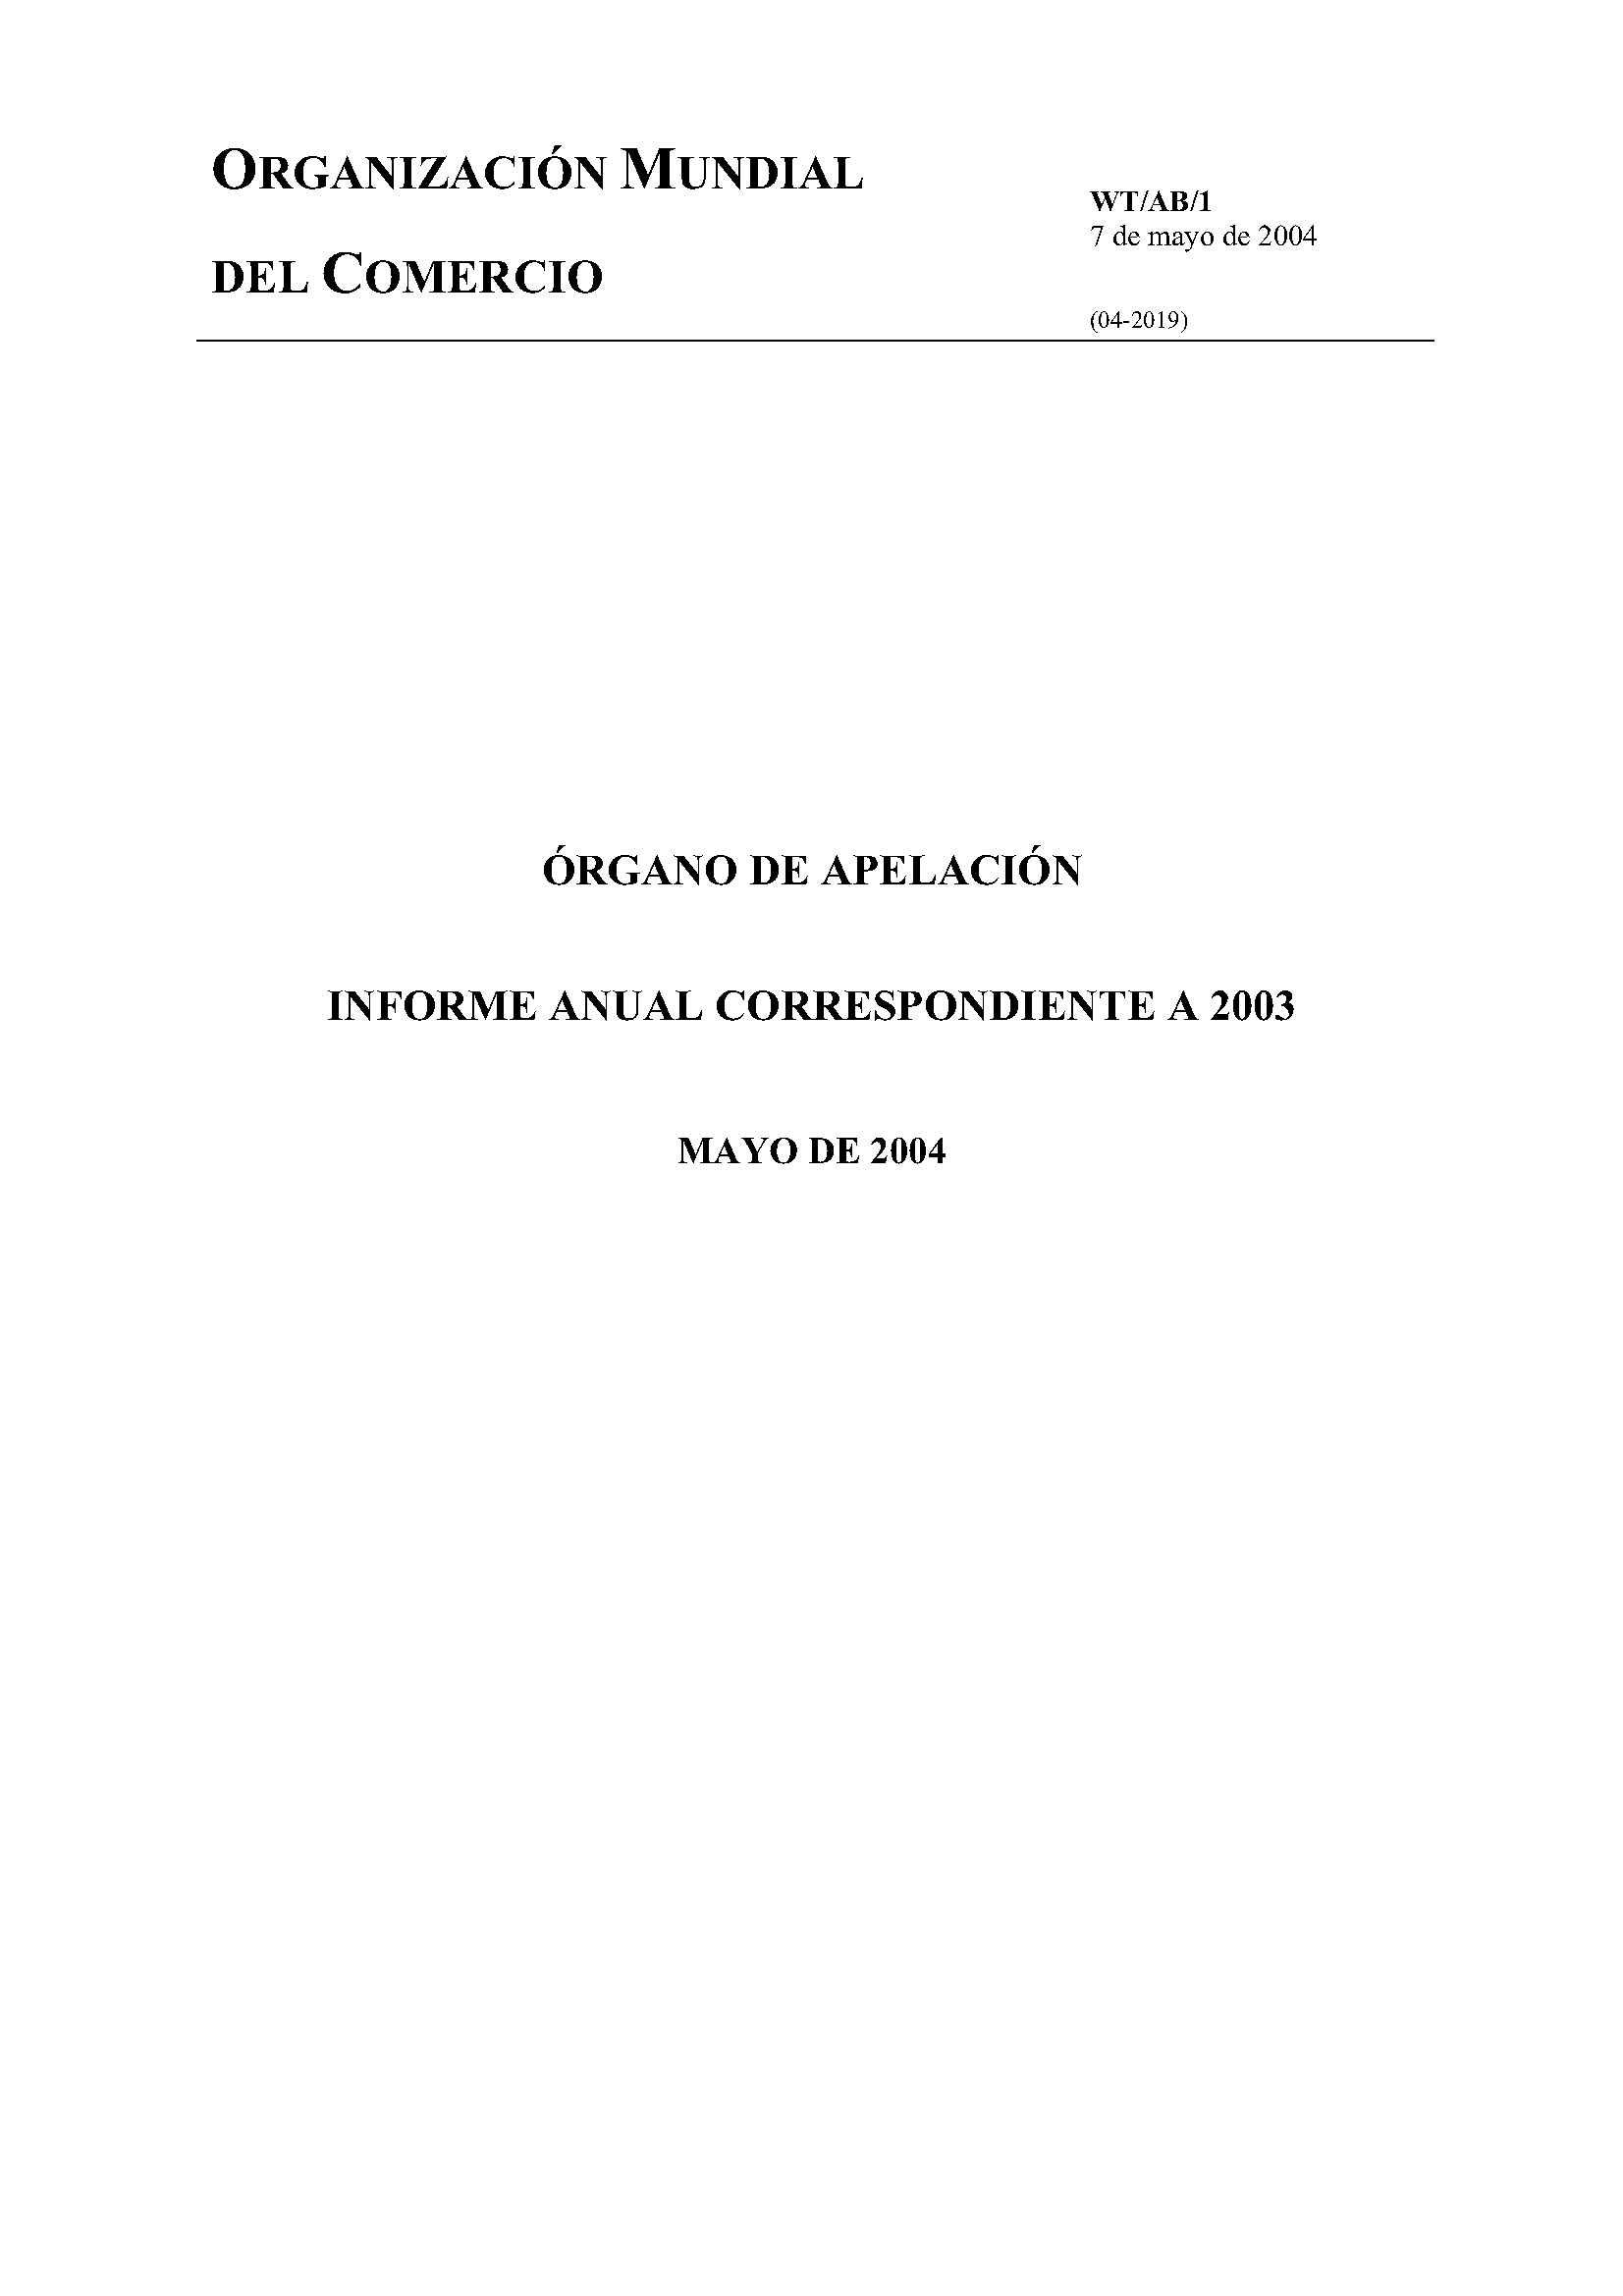 image of Informe anual del ógarno de opelación por 2003